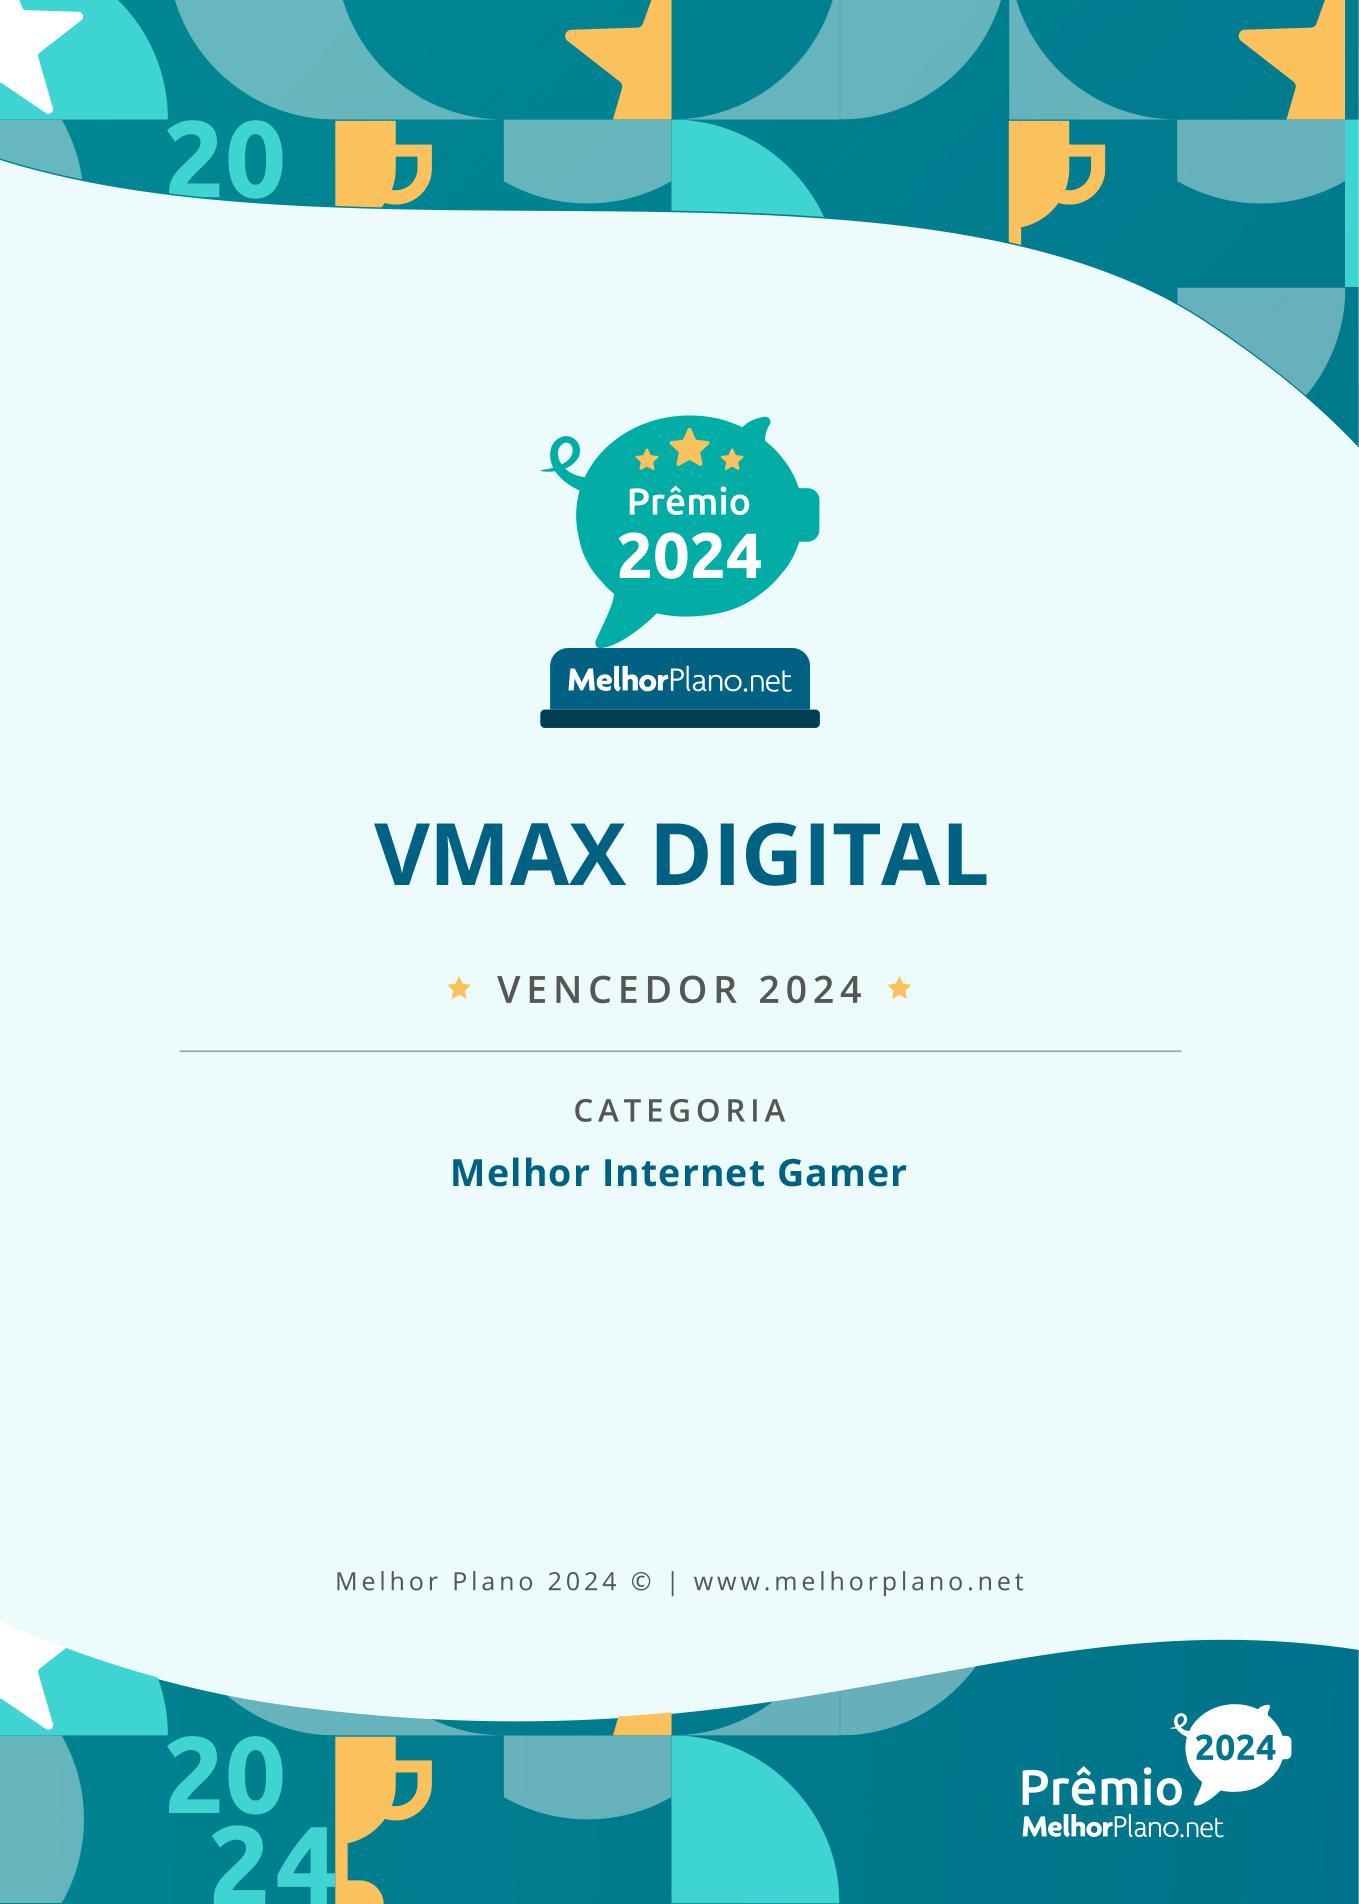 Internet VMAX é premiada pela satisfação de seus clientes pelo segundo ano consecutivo